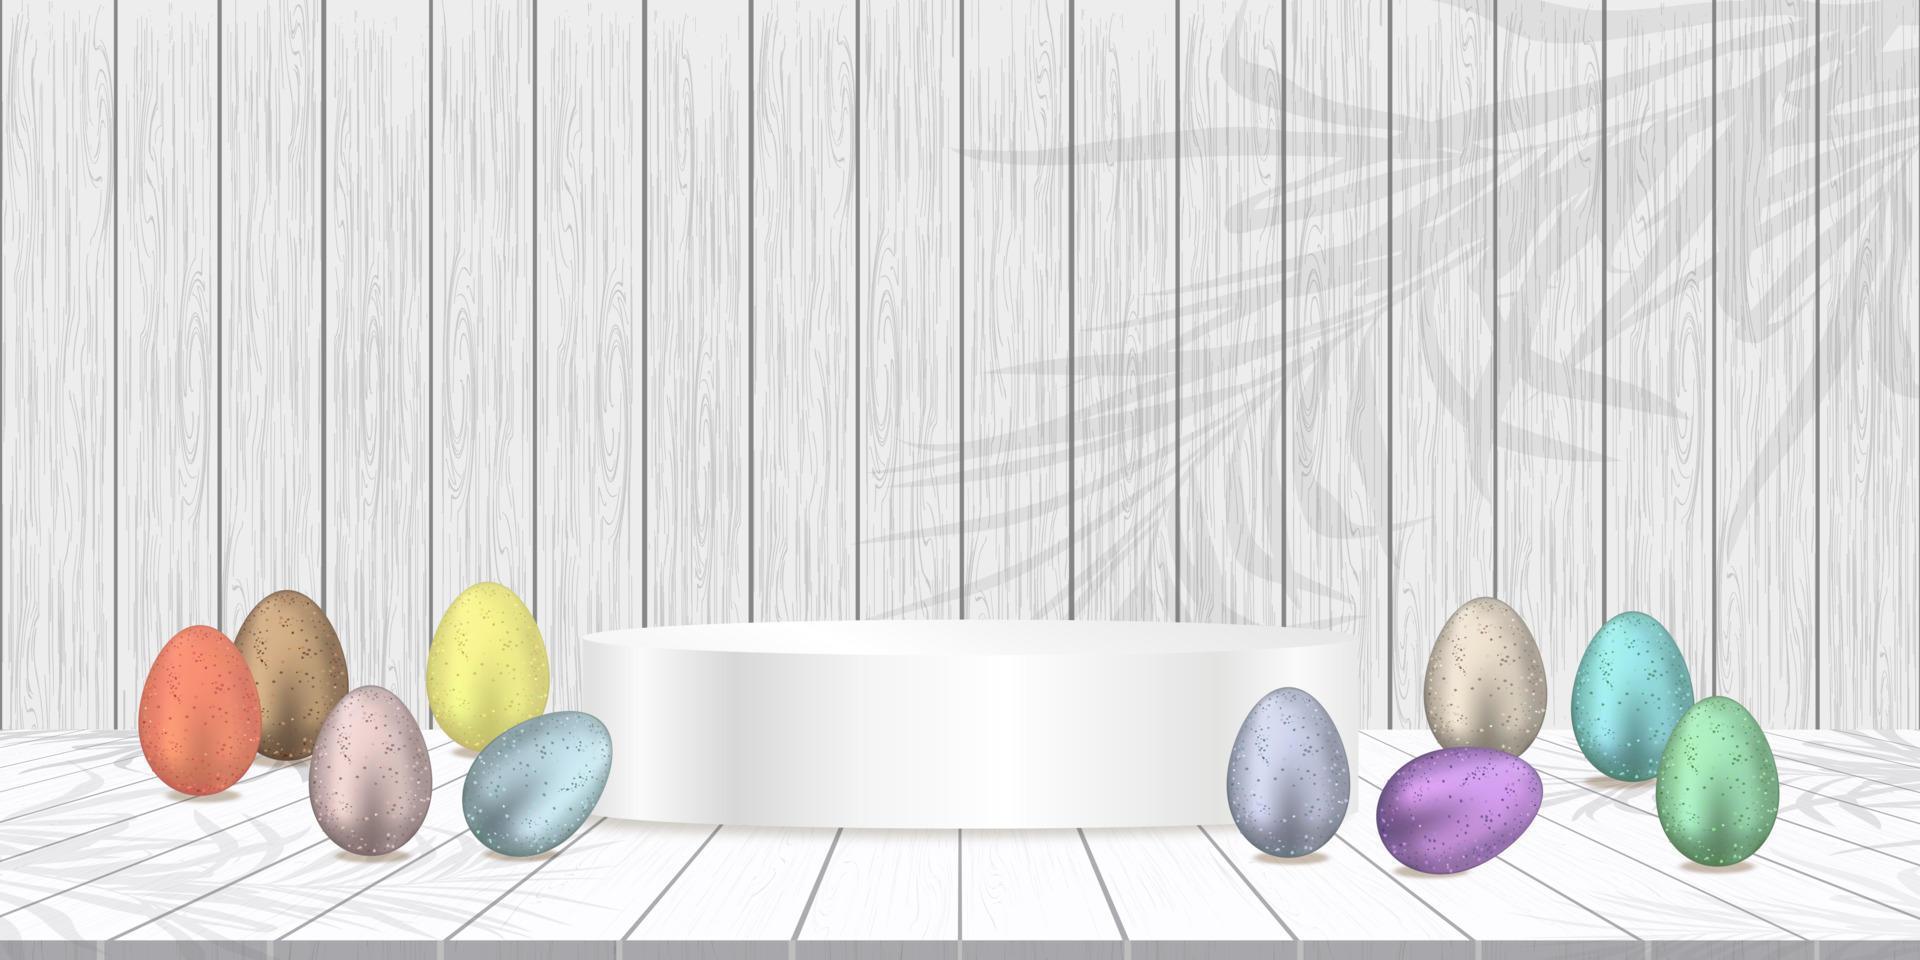 glücklich Ostern Hintergrund Banner Studio Zimmer Tabelle Top, Produkt Anzeige mit Kopieren raum.traditionell Ostern Eier mit 3d Podium auf Weiß Holz Textur Etage, Konzept zum Beförderung auf Ostern Tag vektor